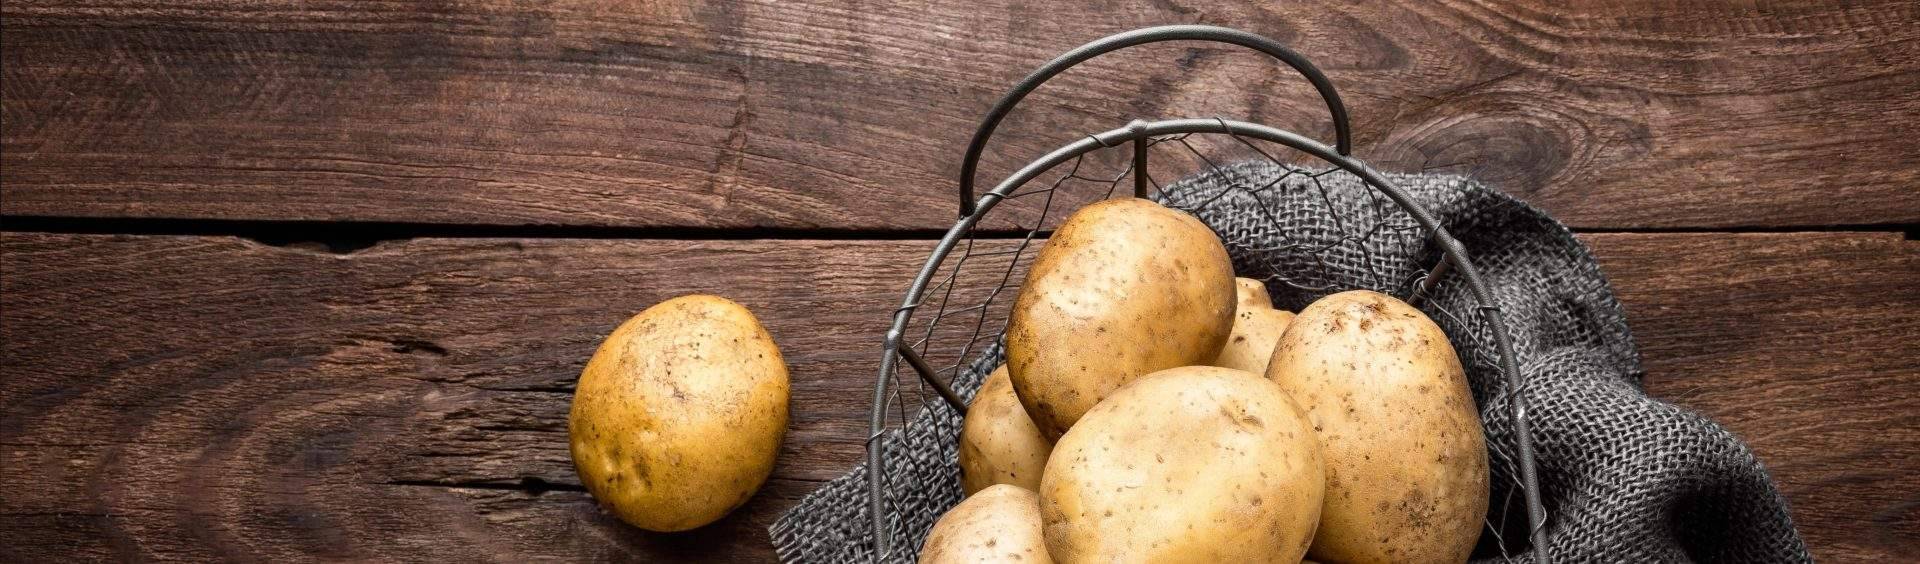 quantas batatas posso comer por dia